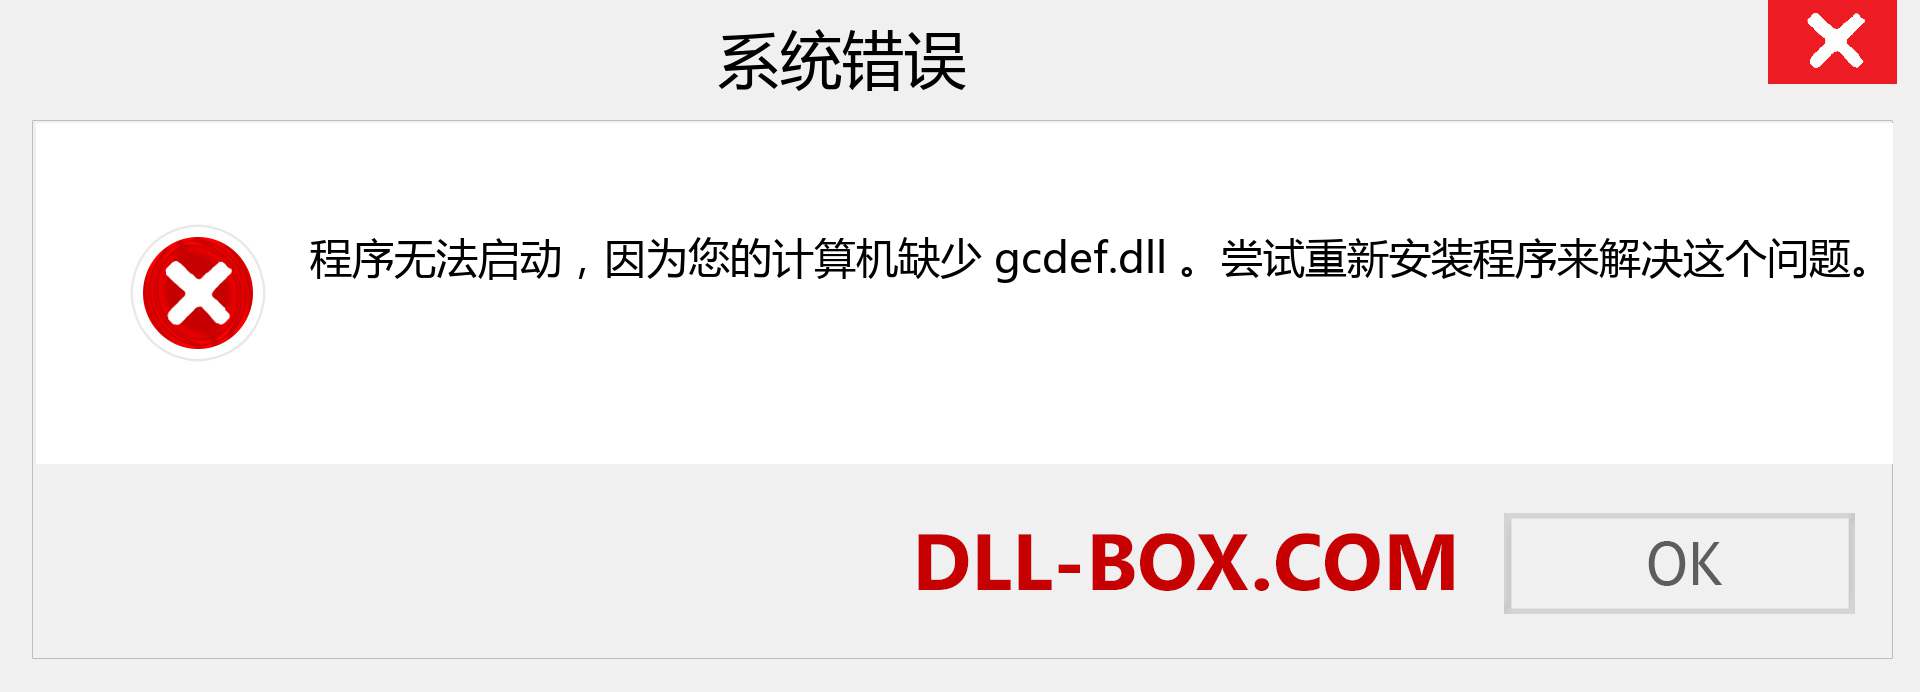 gcdef.dll 文件丢失？。 适用于 Windows 7、8、10 的下载 - 修复 Windows、照片、图像上的 gcdef dll 丢失错误